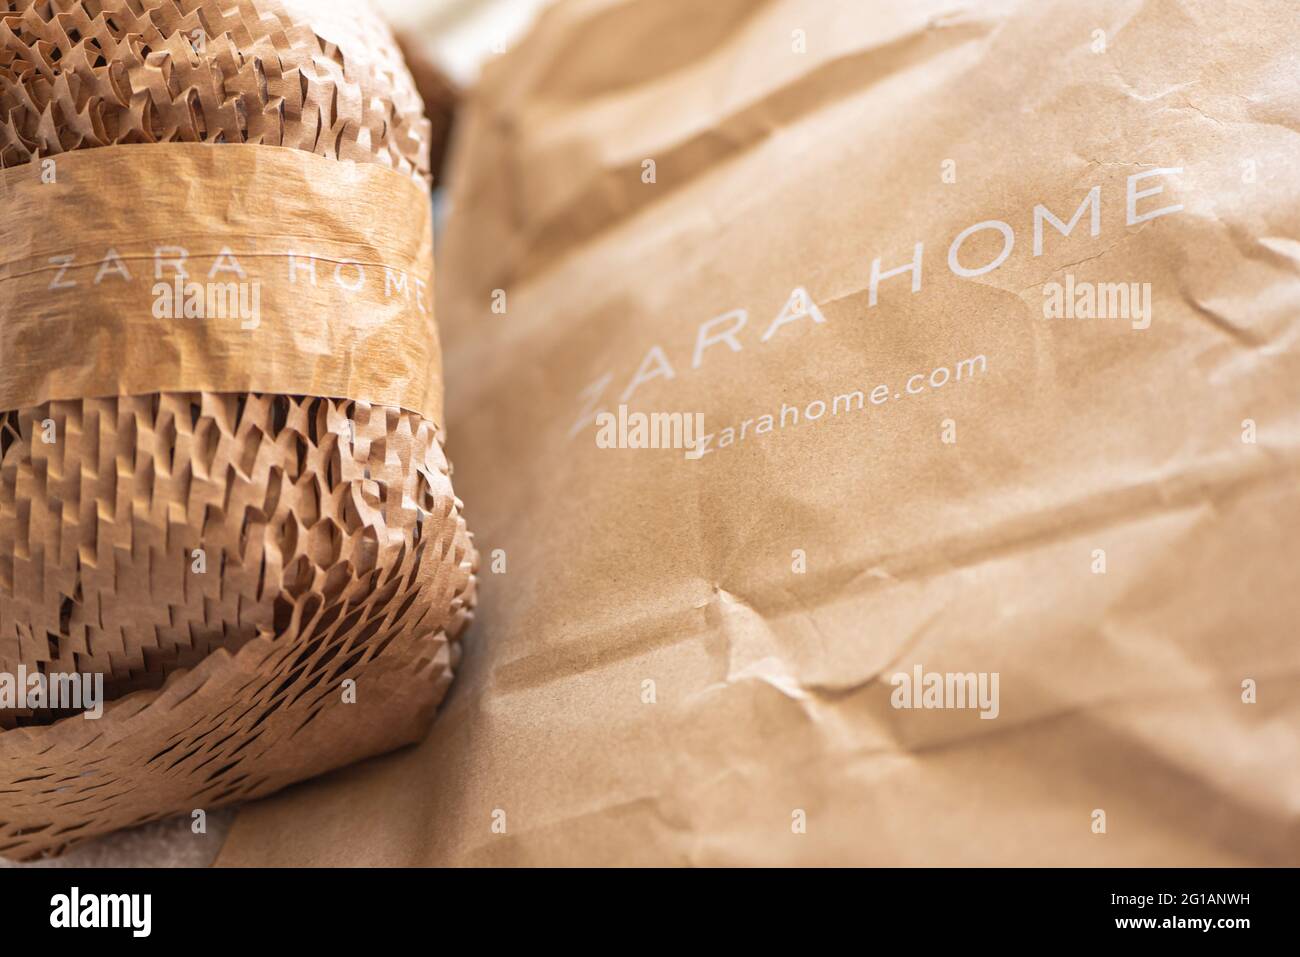 Papier d'emballage avec marque Zara maison à la lumière vive Photo Stock -  Alamy